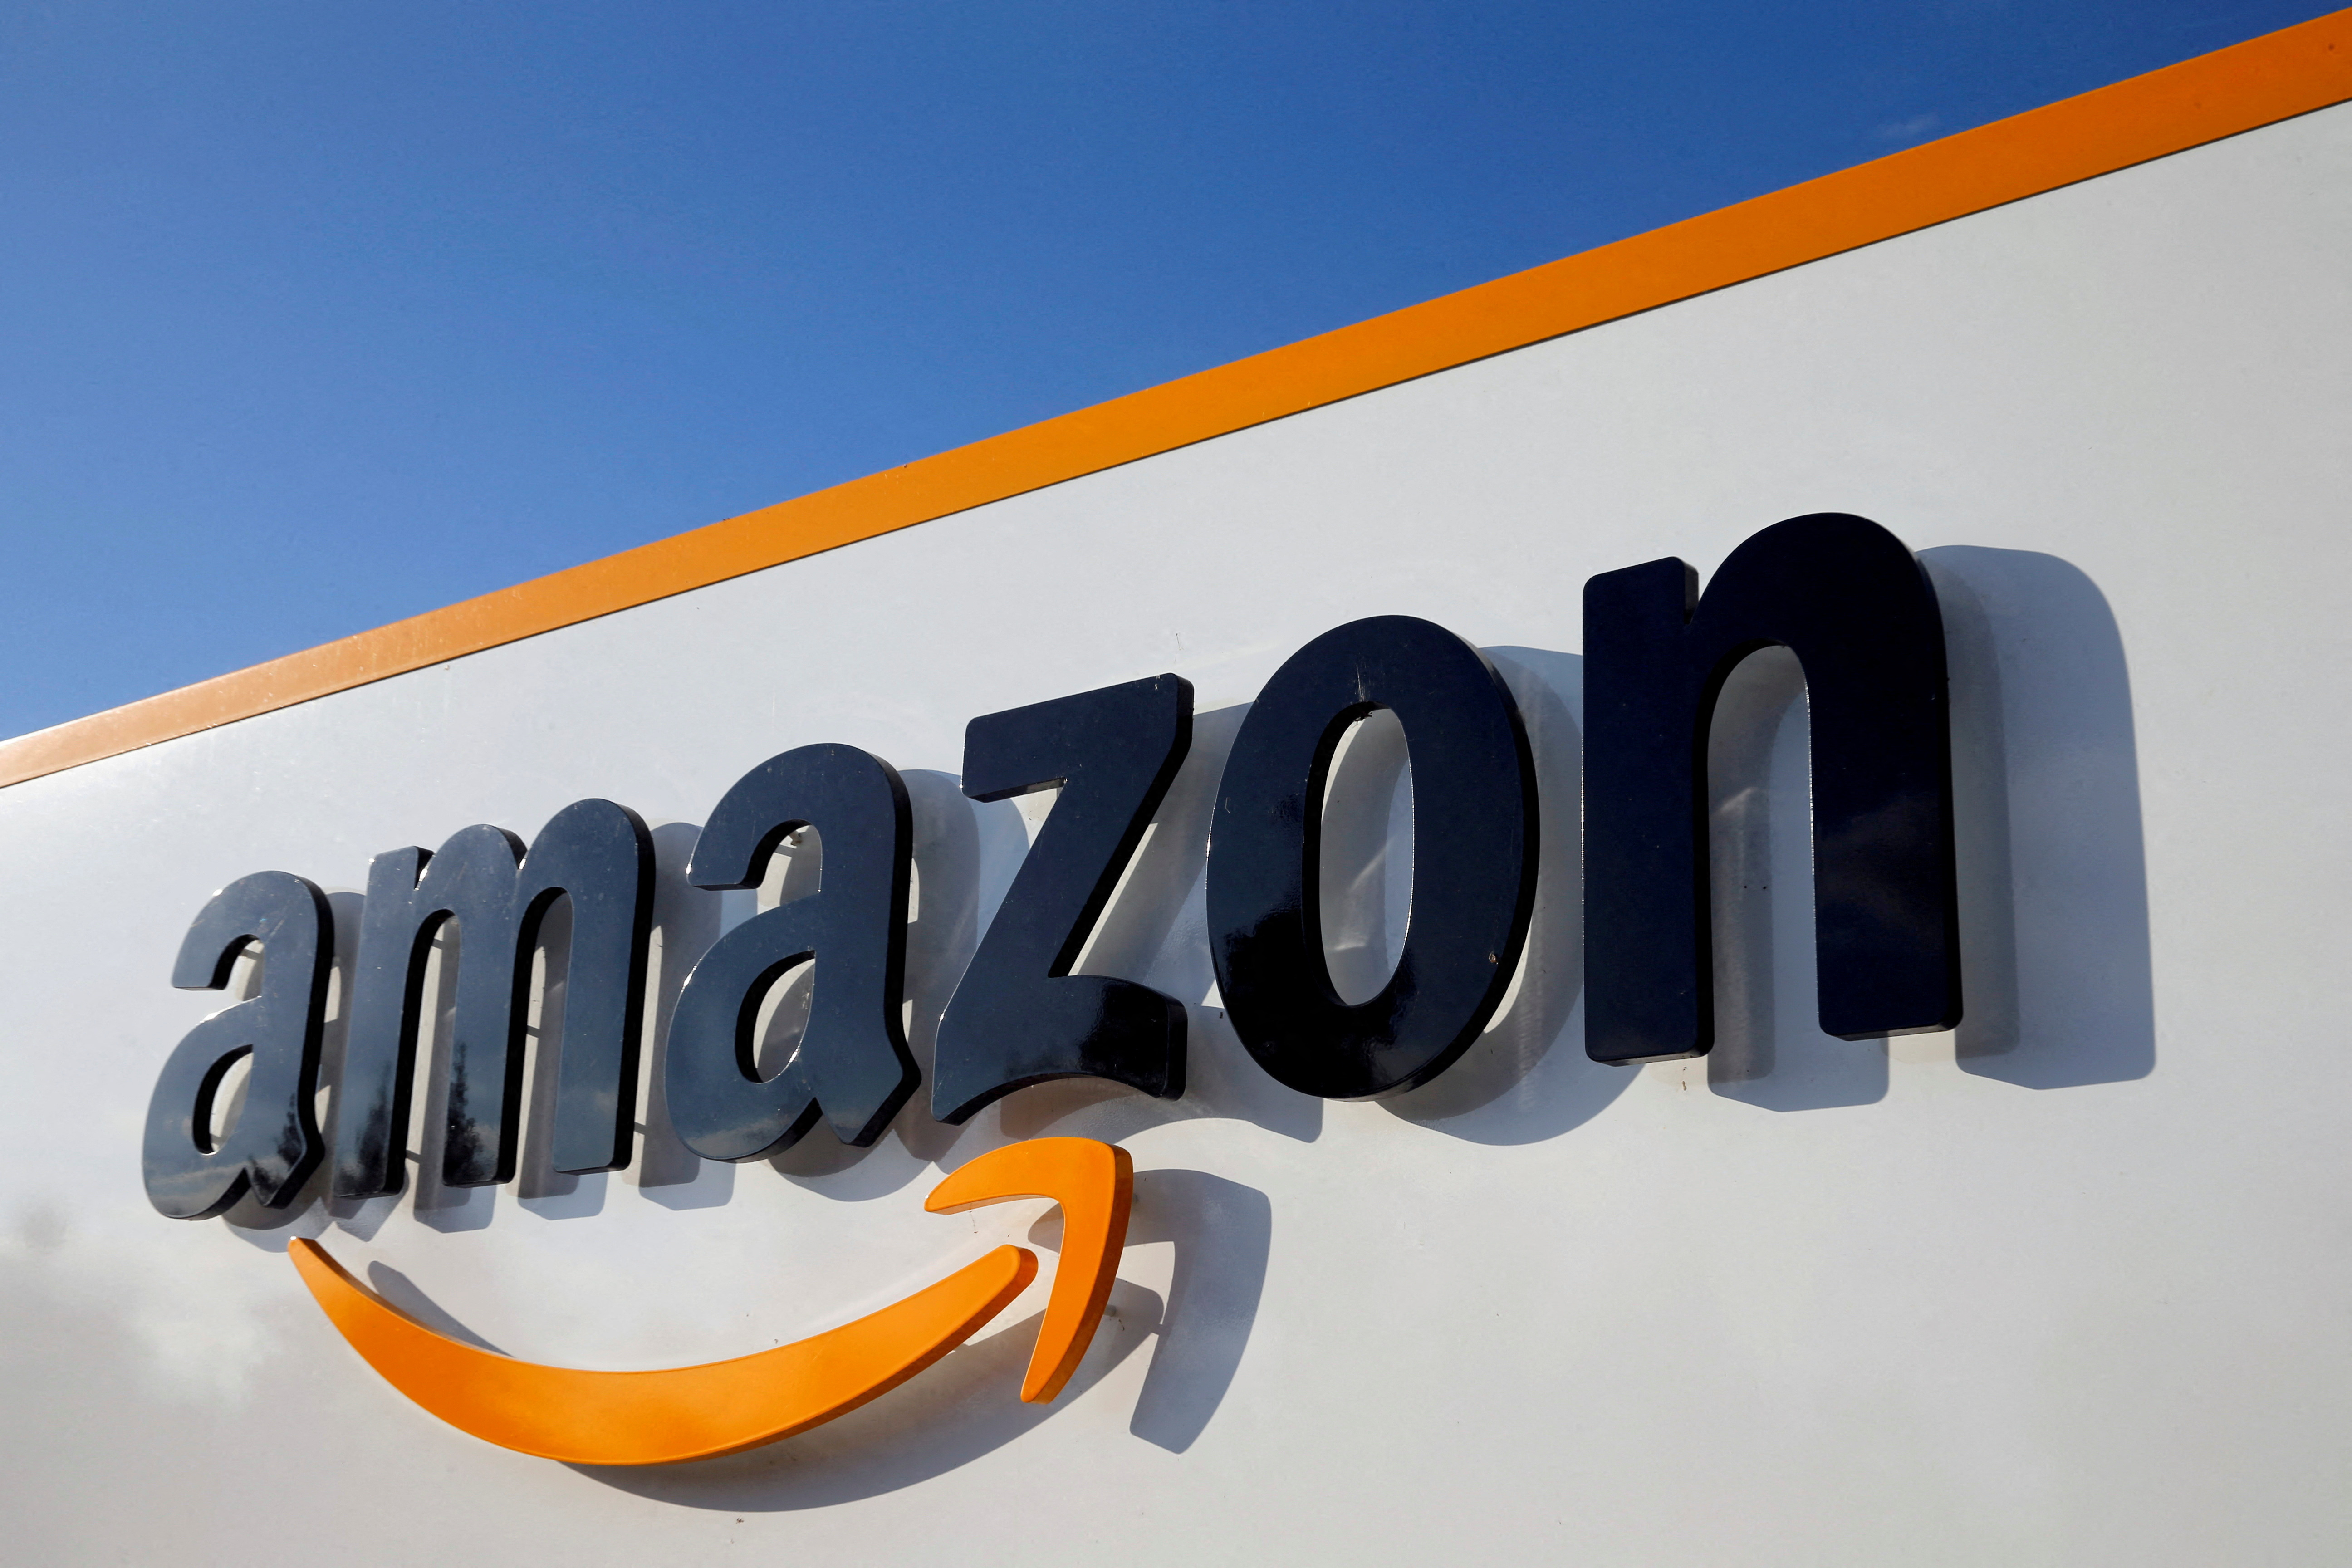 Prix du livre : Amazon part en guerre contre le gouvernement qui souhaite avantager les libraires